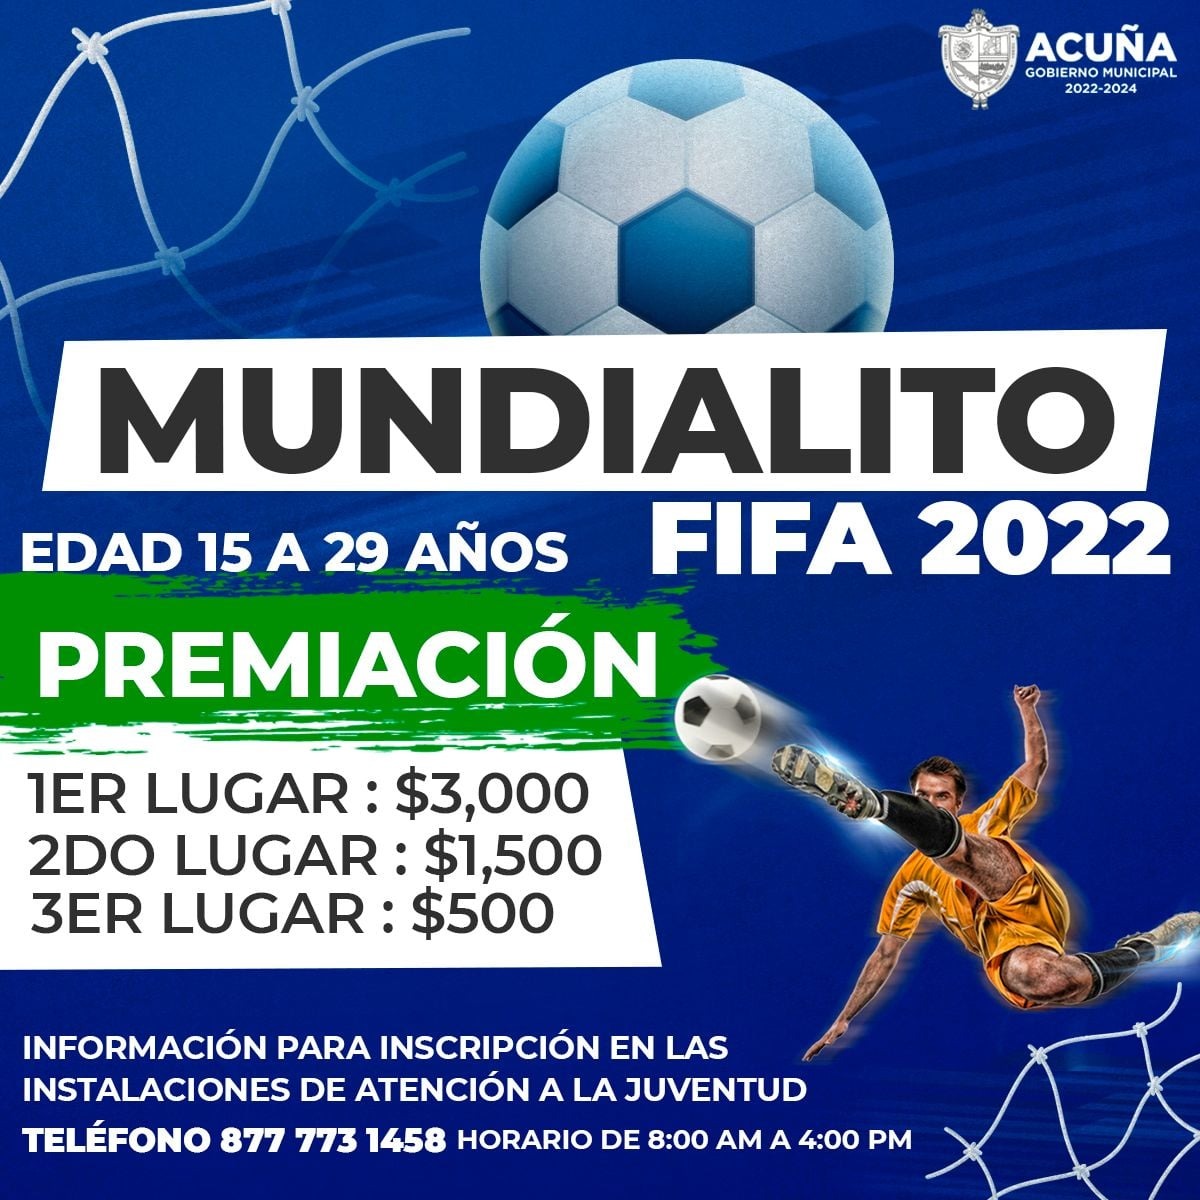 CON ÉXITO CERRÓ EL MUNDIALITO FIFA 2022 CON LA PARTICIPACIÓN DE 32 JÓVENES DE 15 A 29 AÑOS